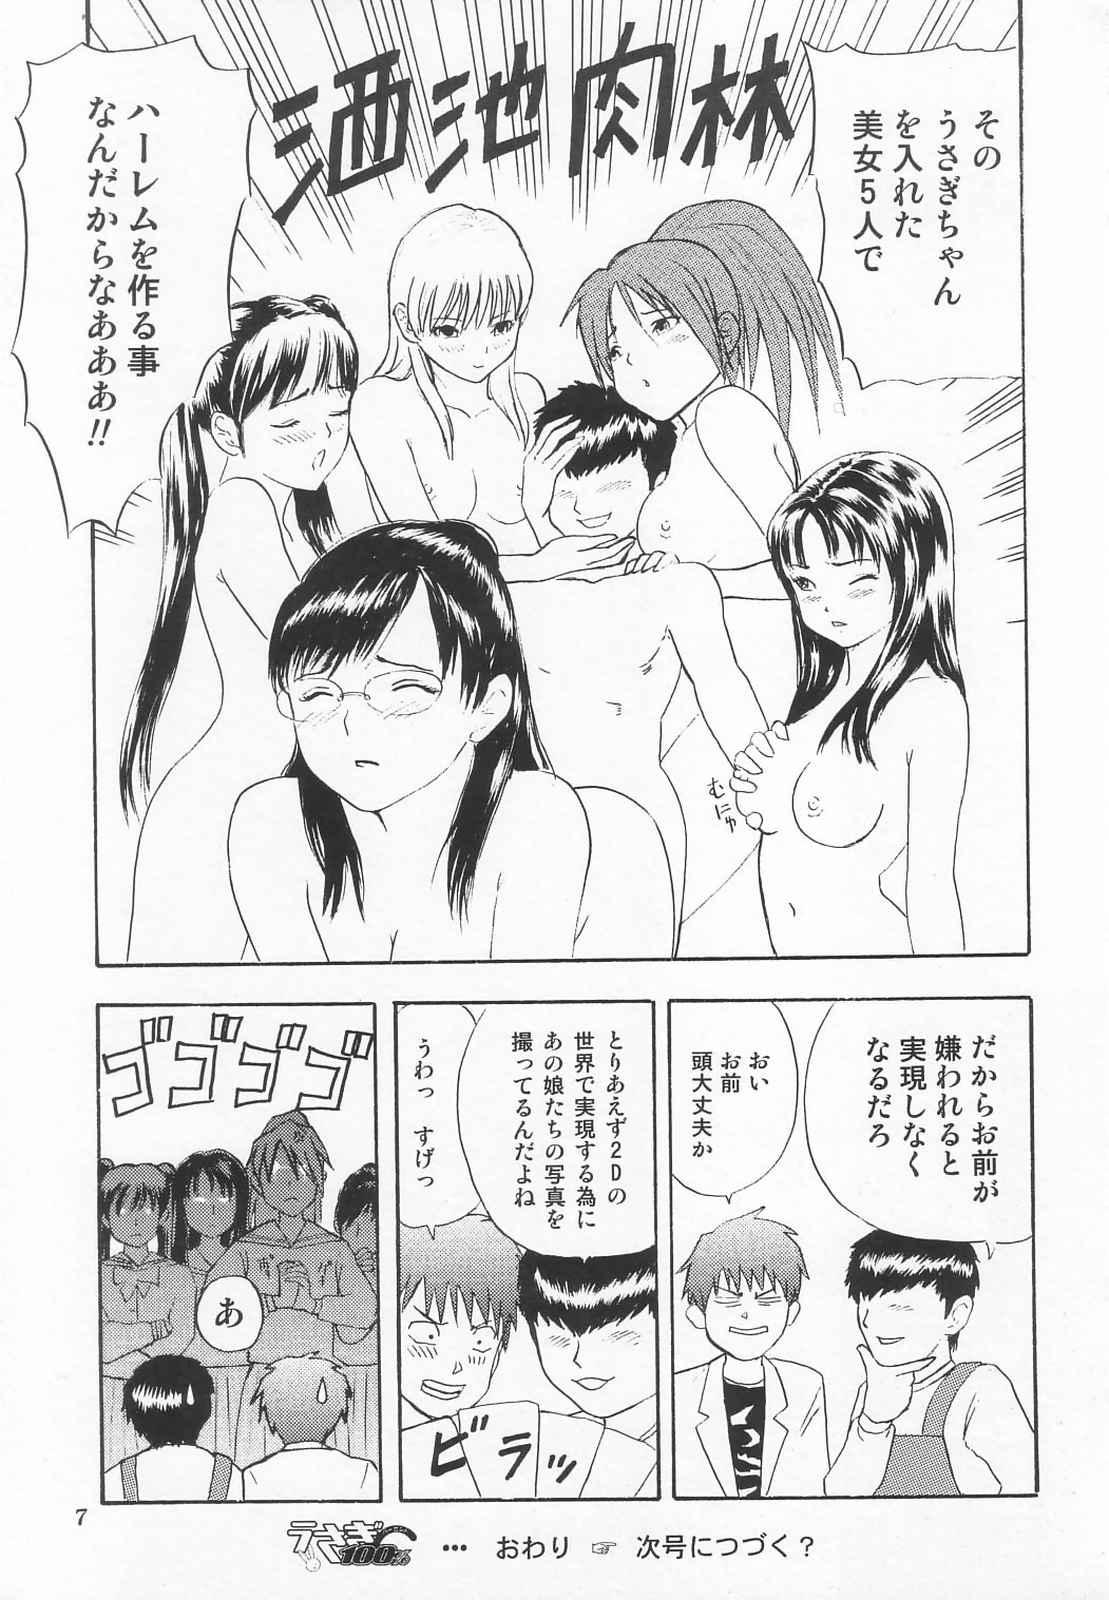 Amiga Tokusatsu Magazine x 2003 Fuyu Gou - Sailor moon Ichigo 100 Public Sex - Page 9